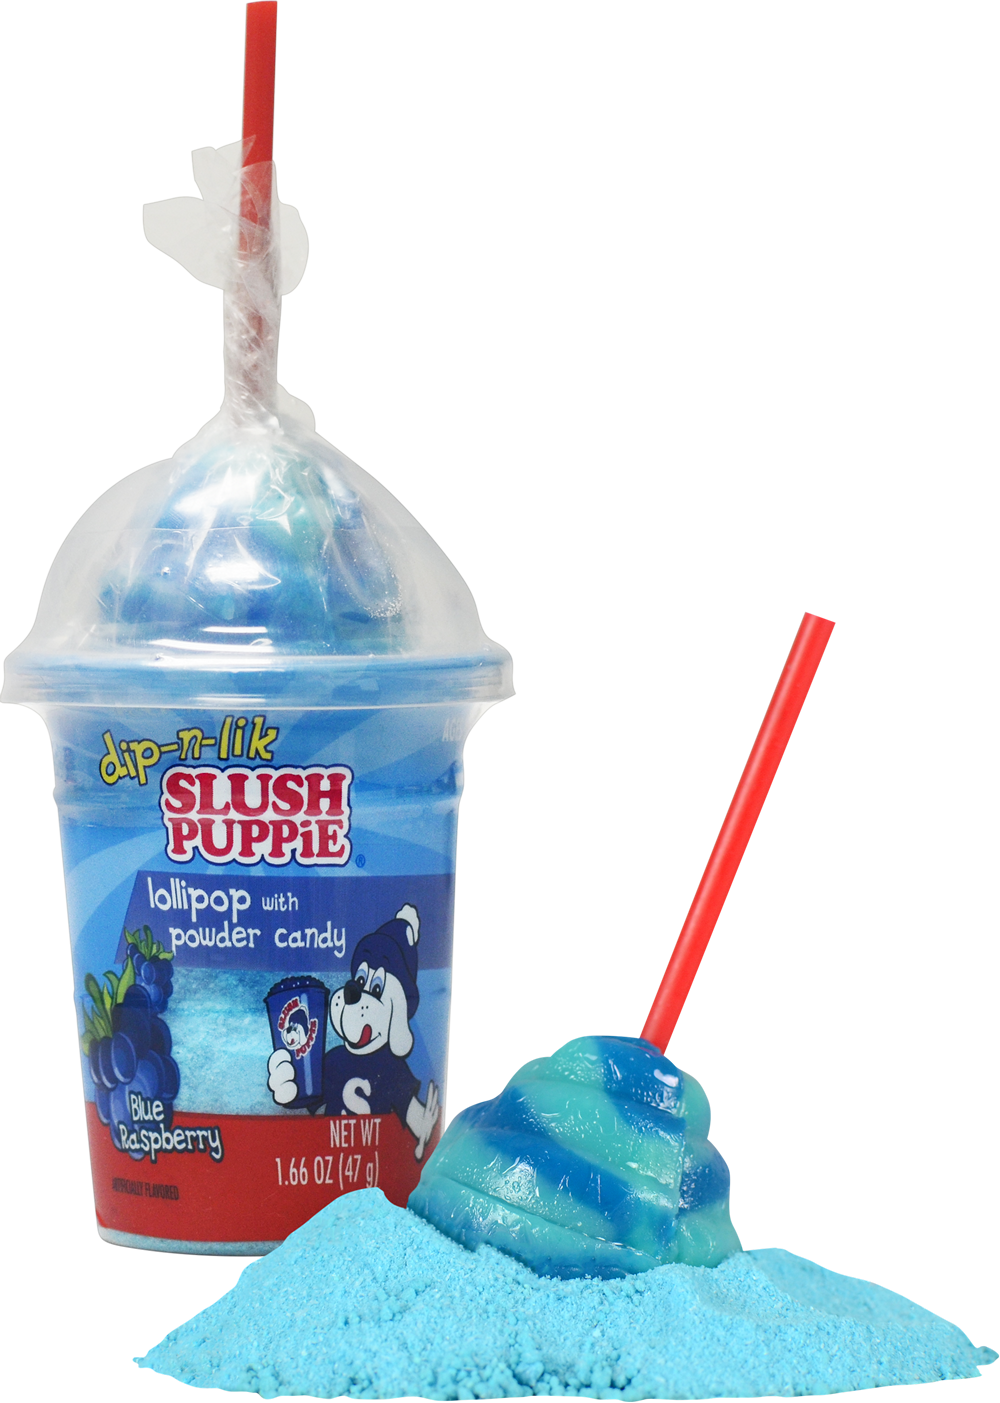 https://exclusivebrands.ca/wp-content/uploads/2022/06/product-novelty-12365-Unit-Group-Slush-Puppie-Lollipop-1.png